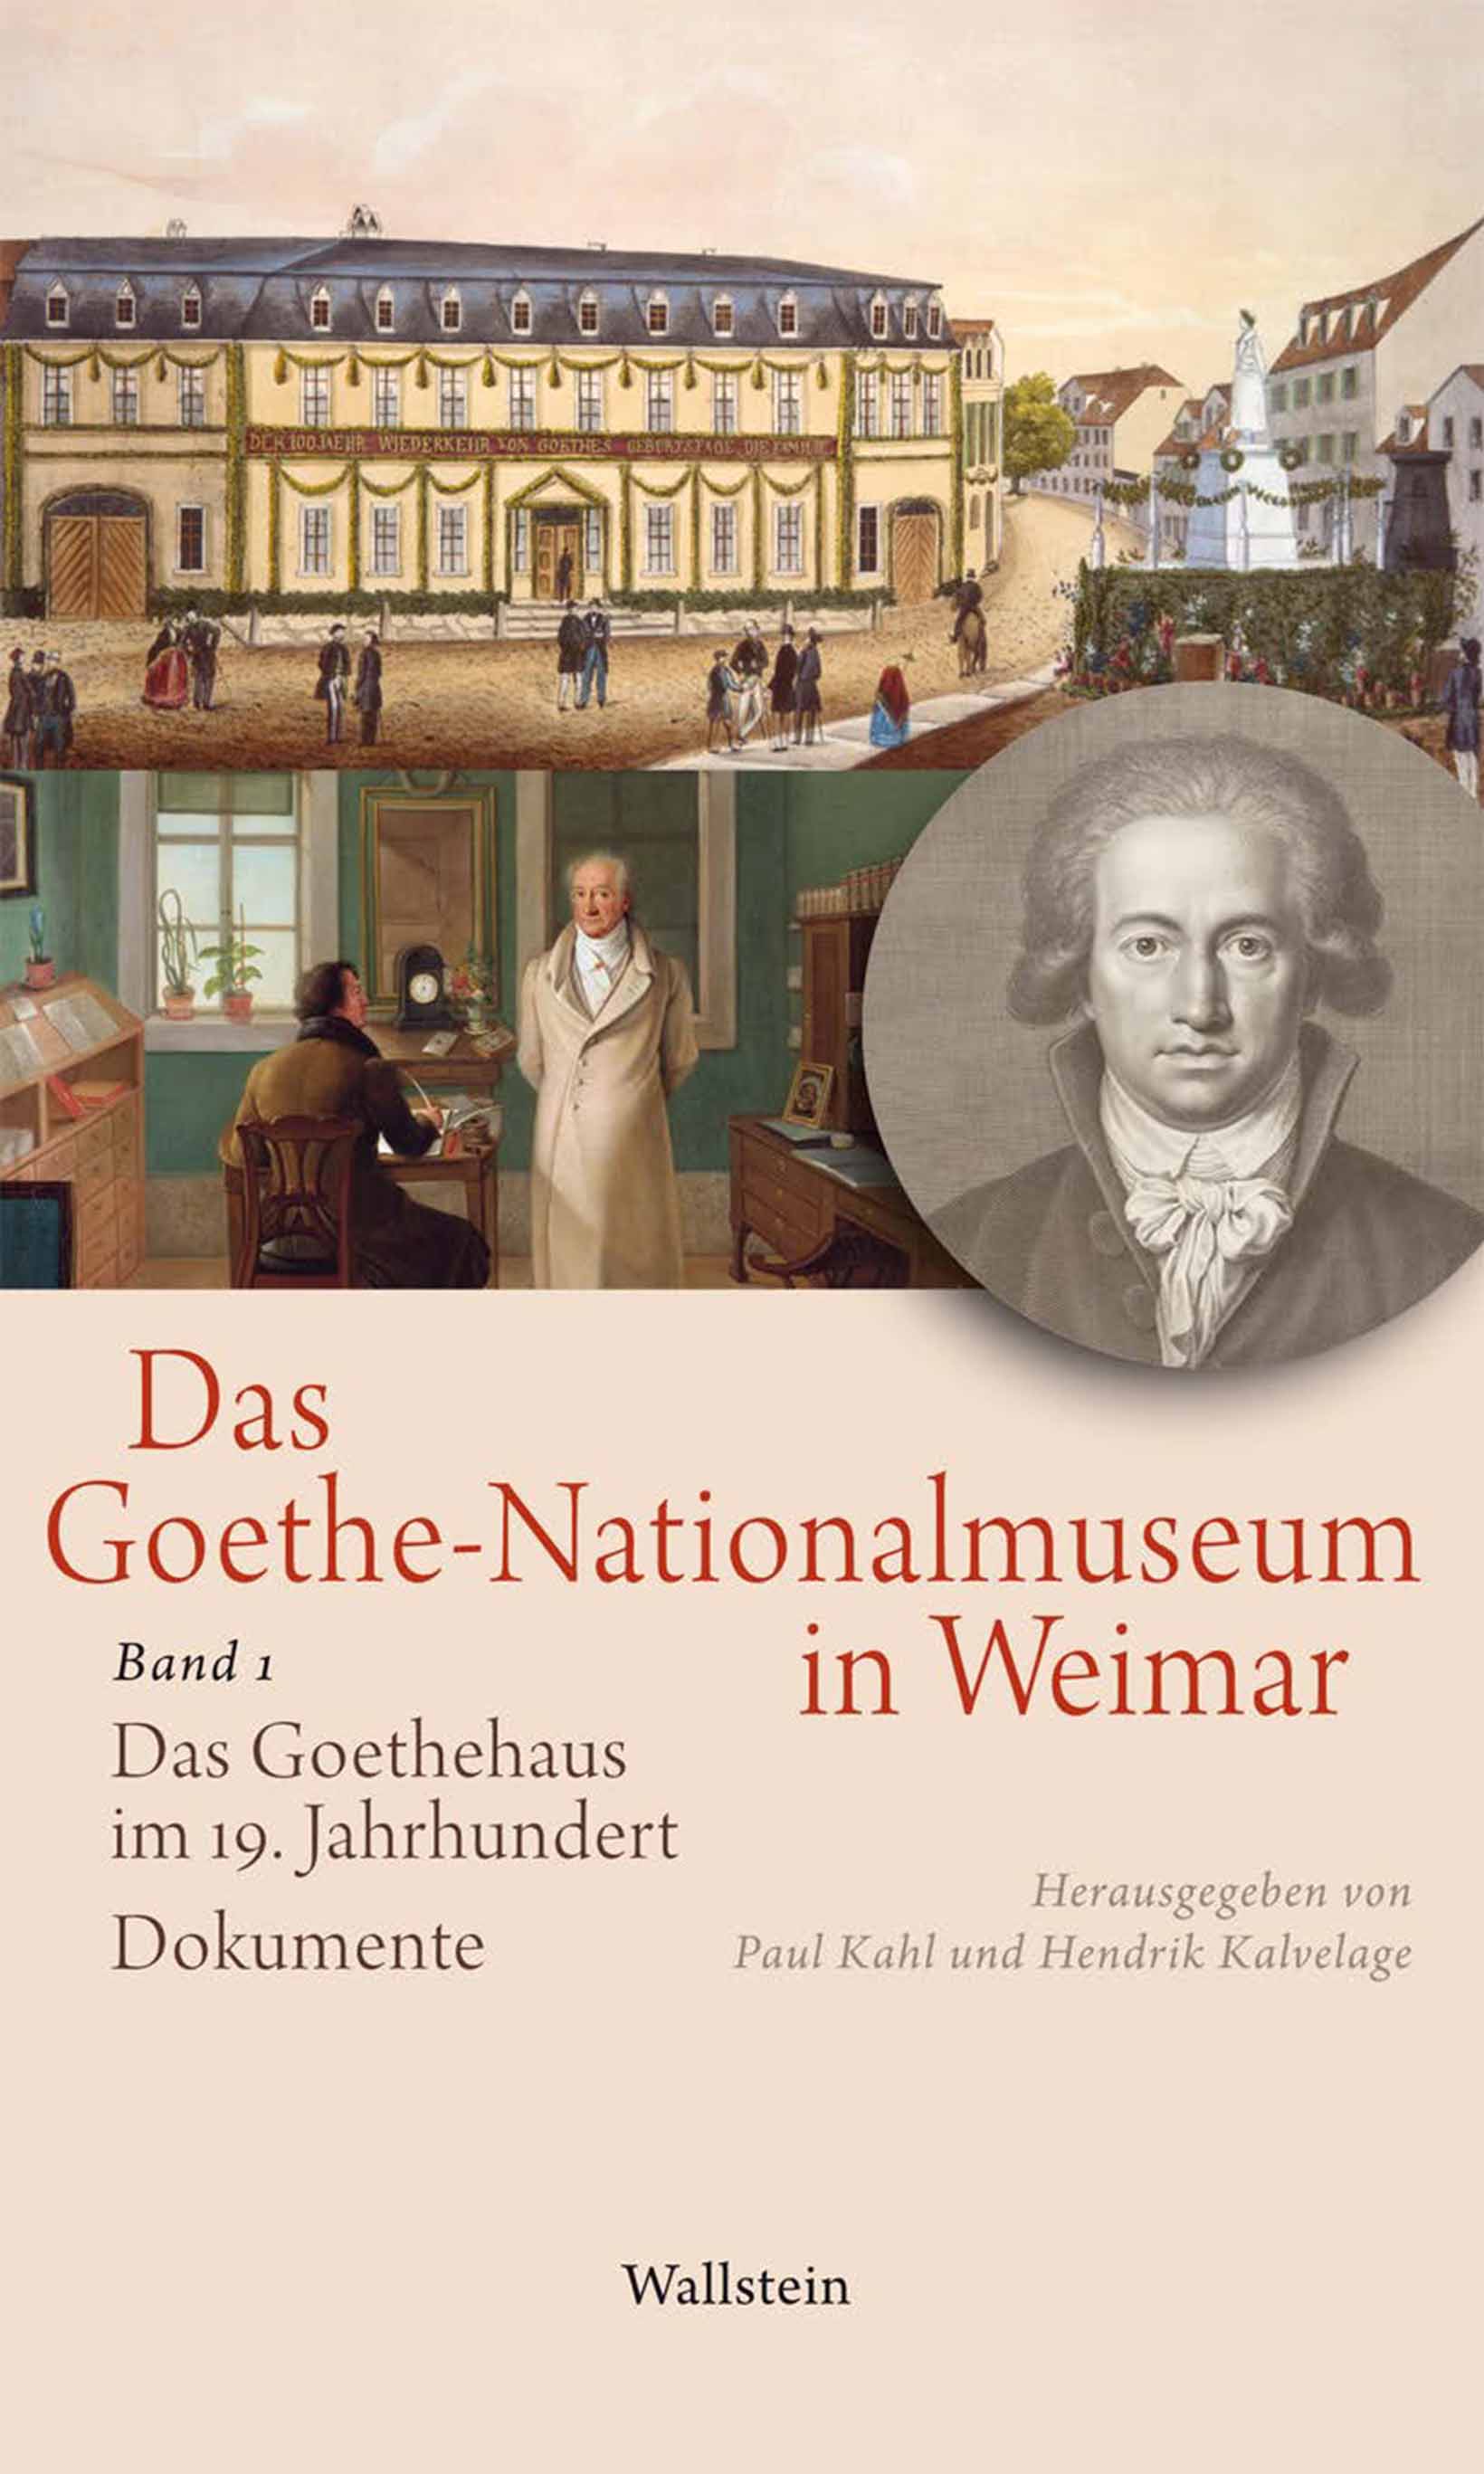 Bucheinband von »Das Goethe-Nationalmuseum in Weimar, Band 1: Das Goethehaus im 19. Jahrhundert«